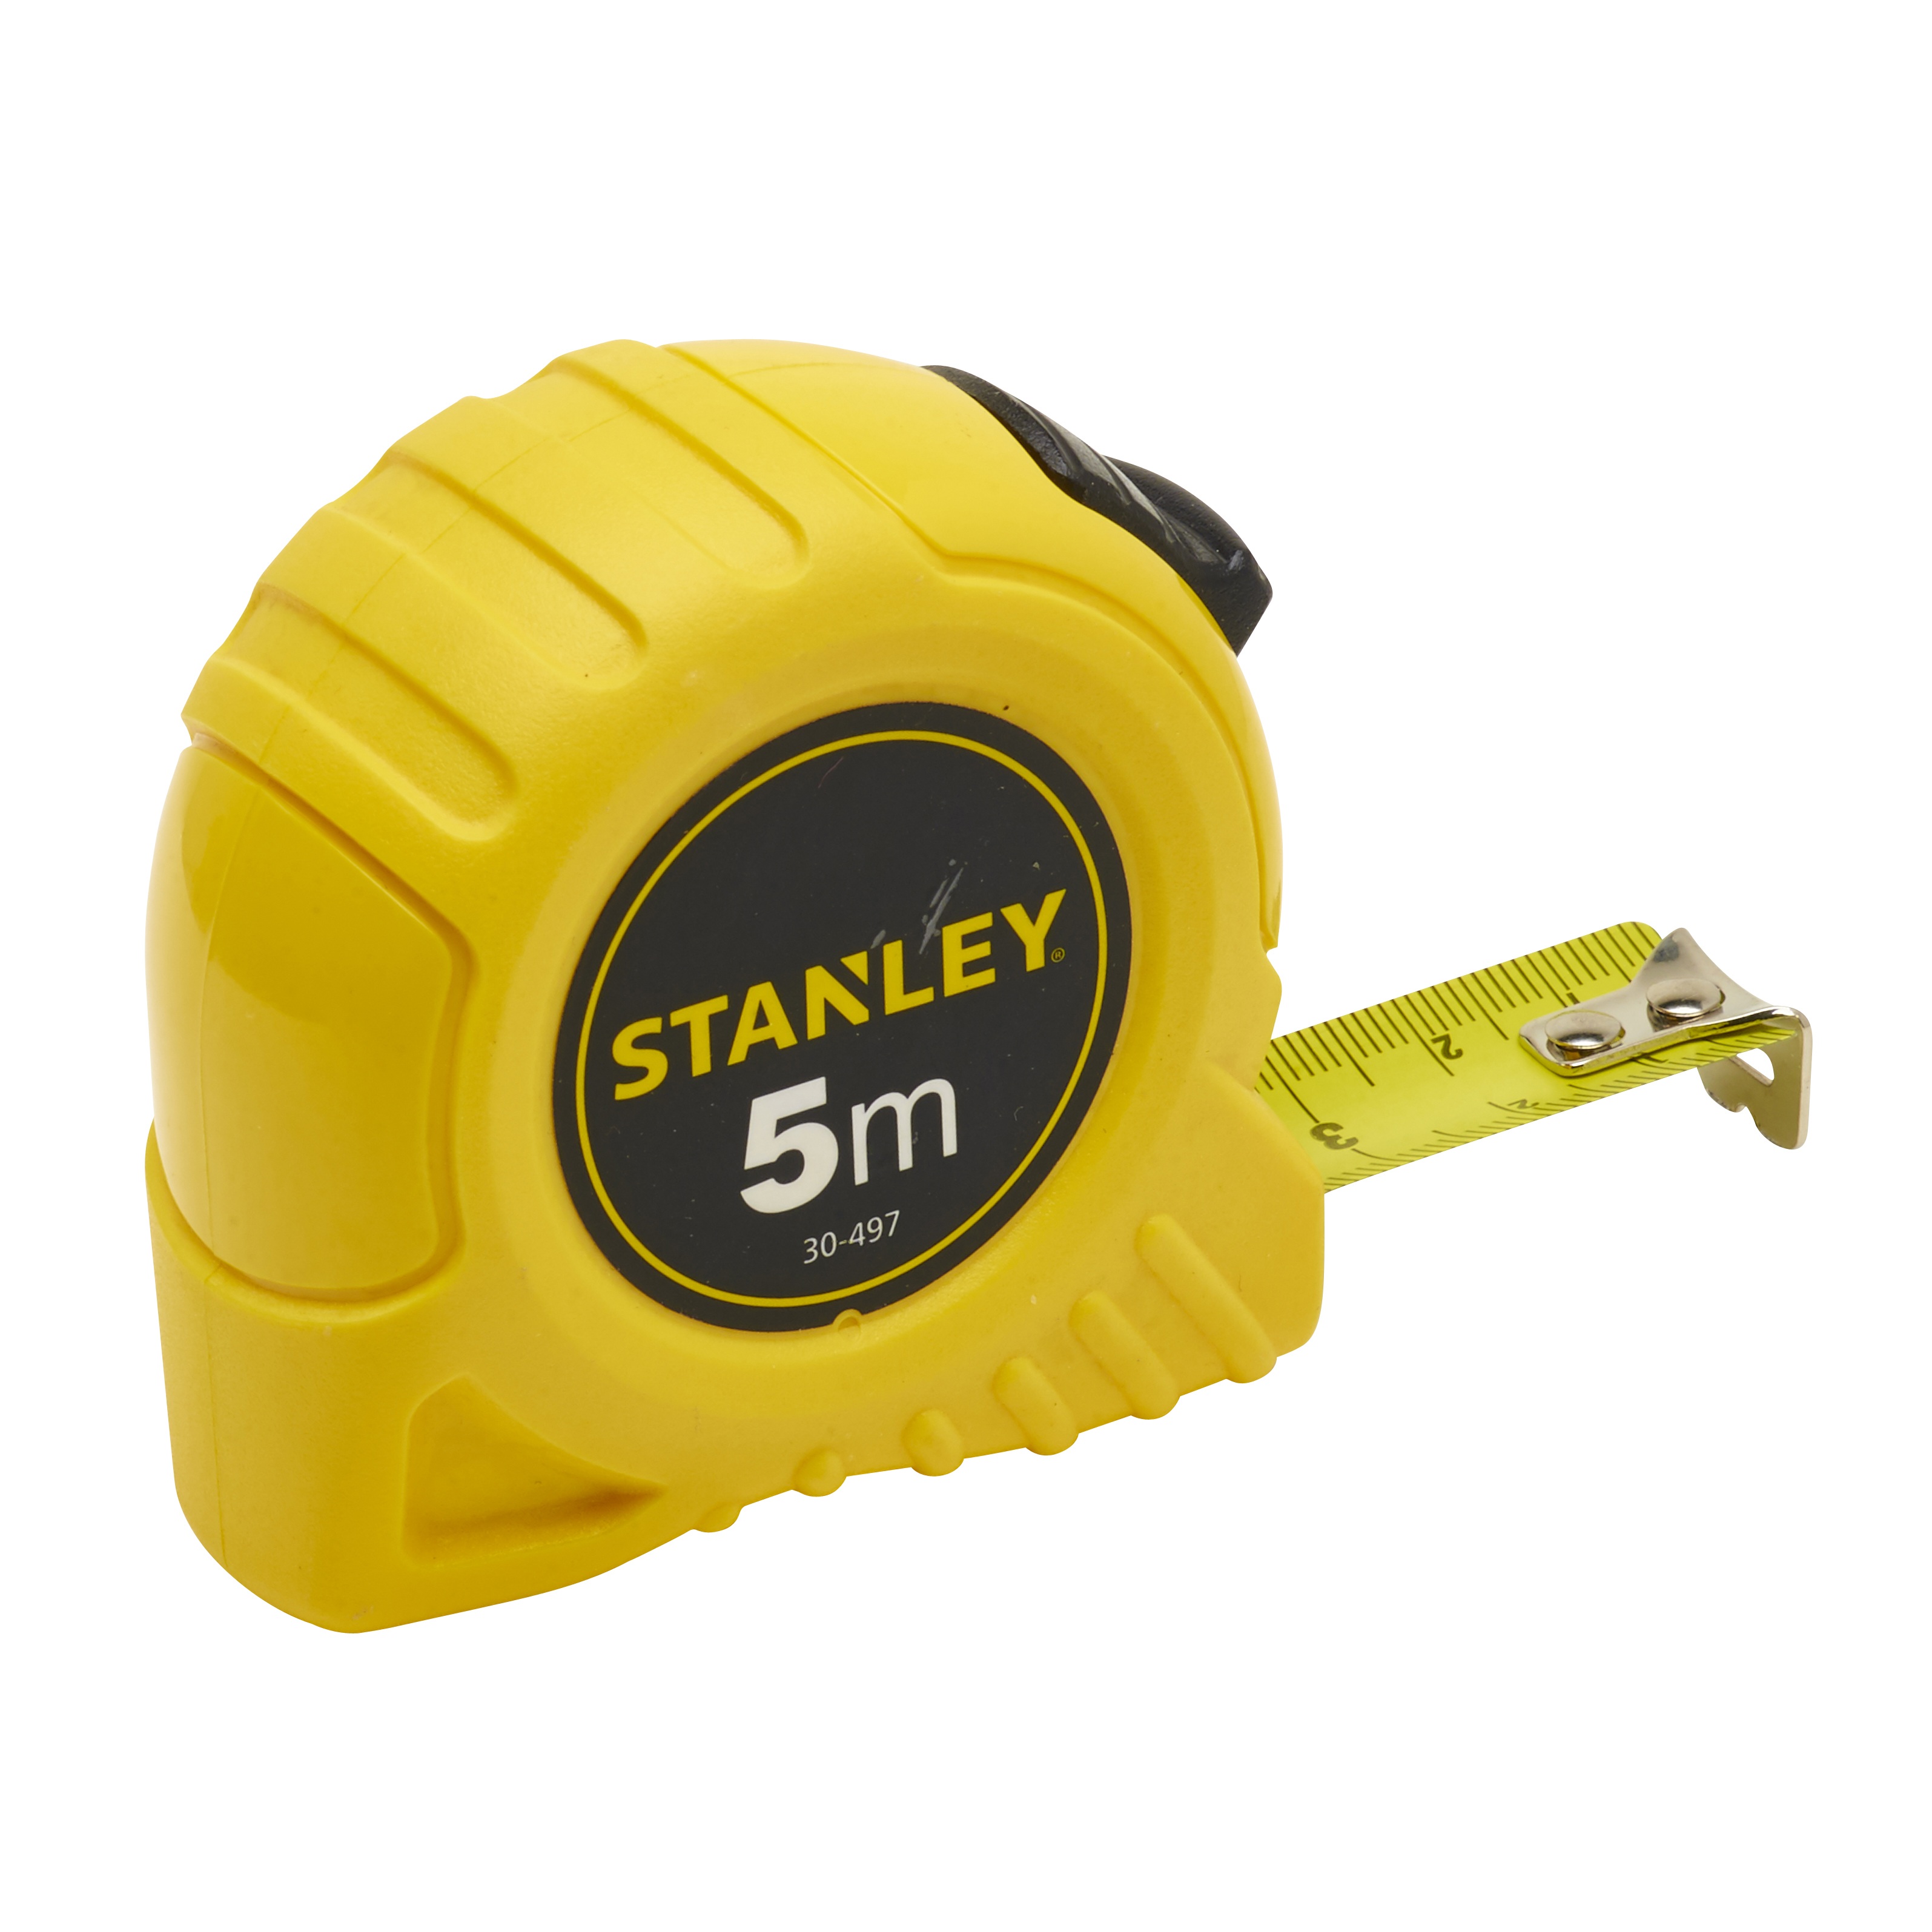 Rolbandmaat Stanley 5m - 19mm